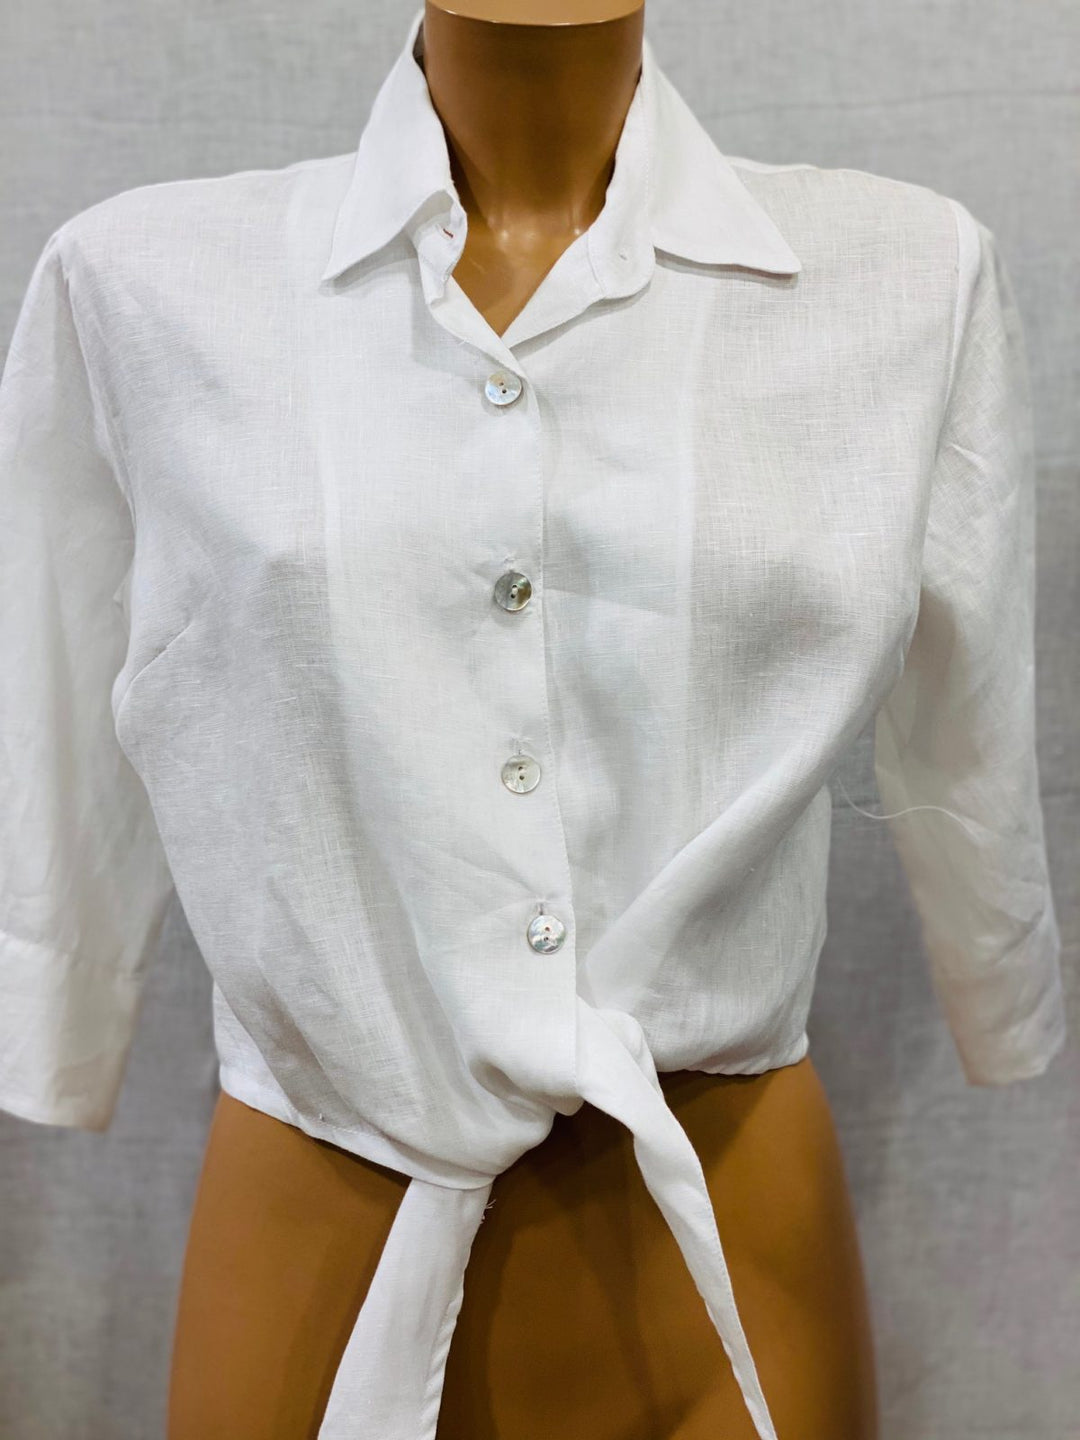 Positano Tania Linen Shirt - Premium Shirts & Tops from Marina St. Barth - Just $290.00! Shop now at Marina St Barth